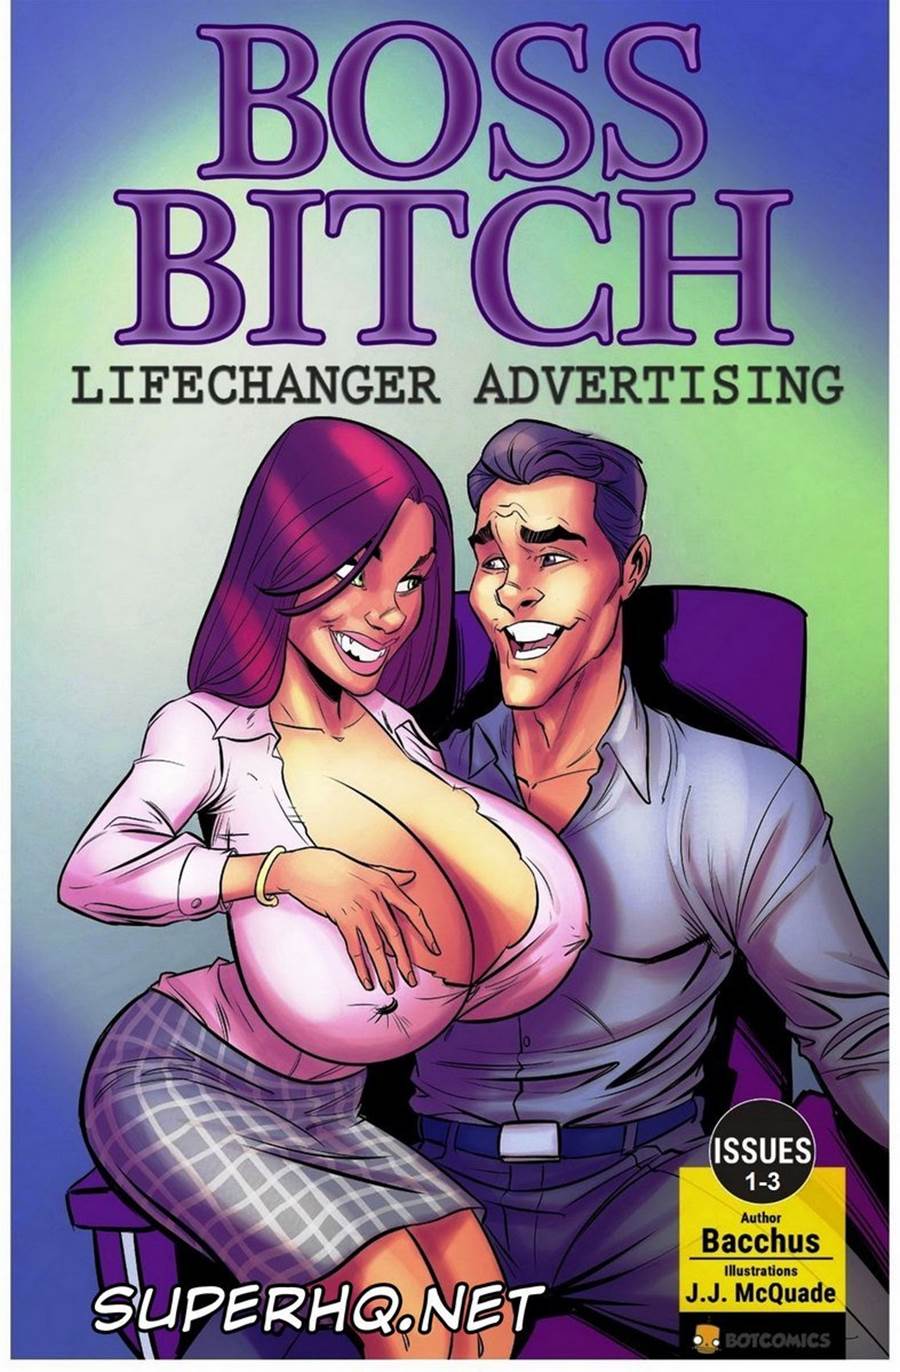 Boss bitch - quadrinhos eroticos